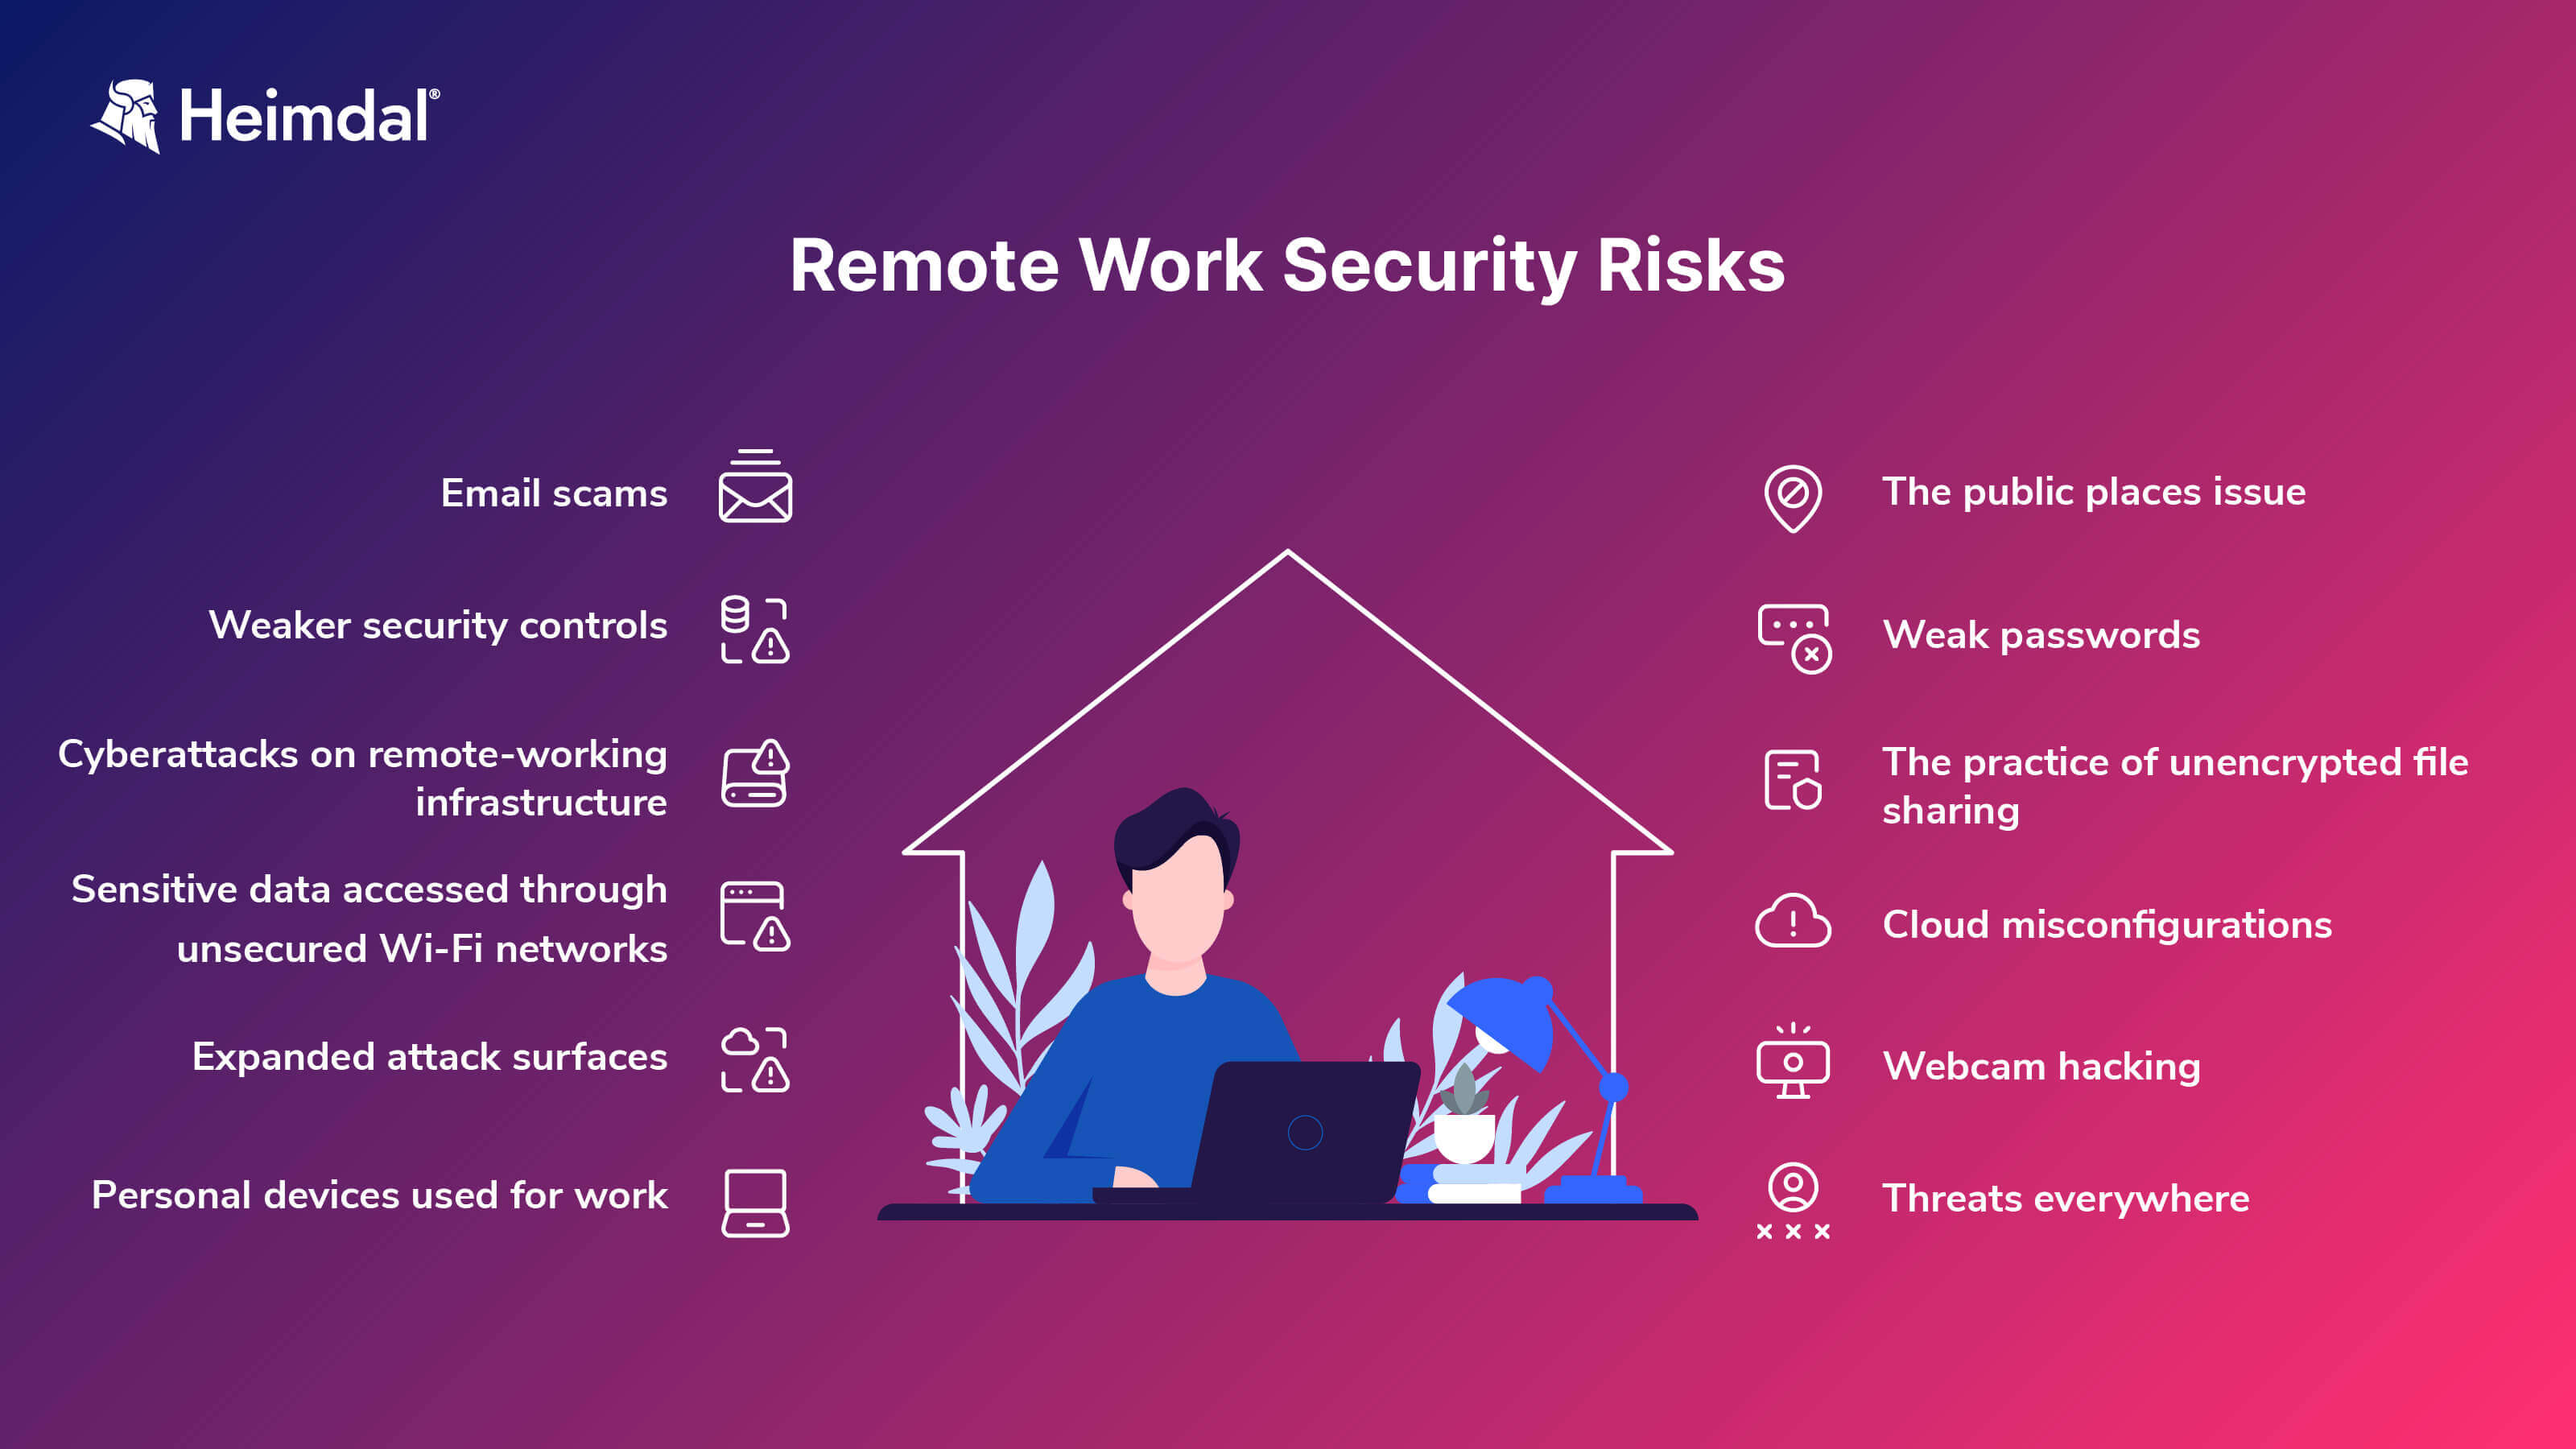 remote work security risks image for Heimdal's blog